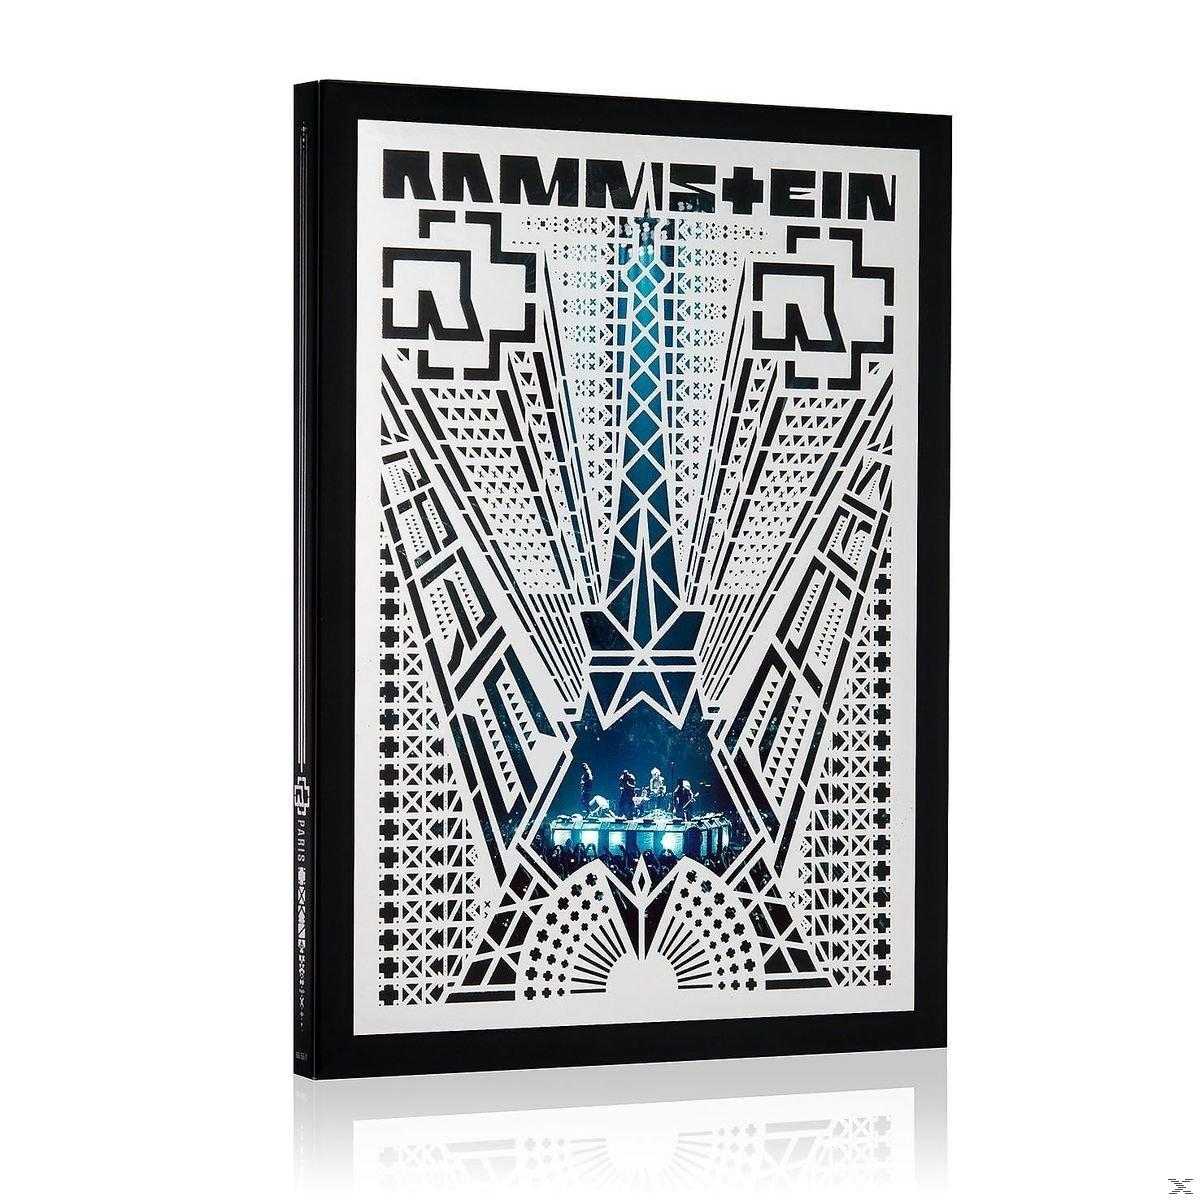 Rammstein - (Standard (Blu-ray) Edt.) Rammstein: Paris 